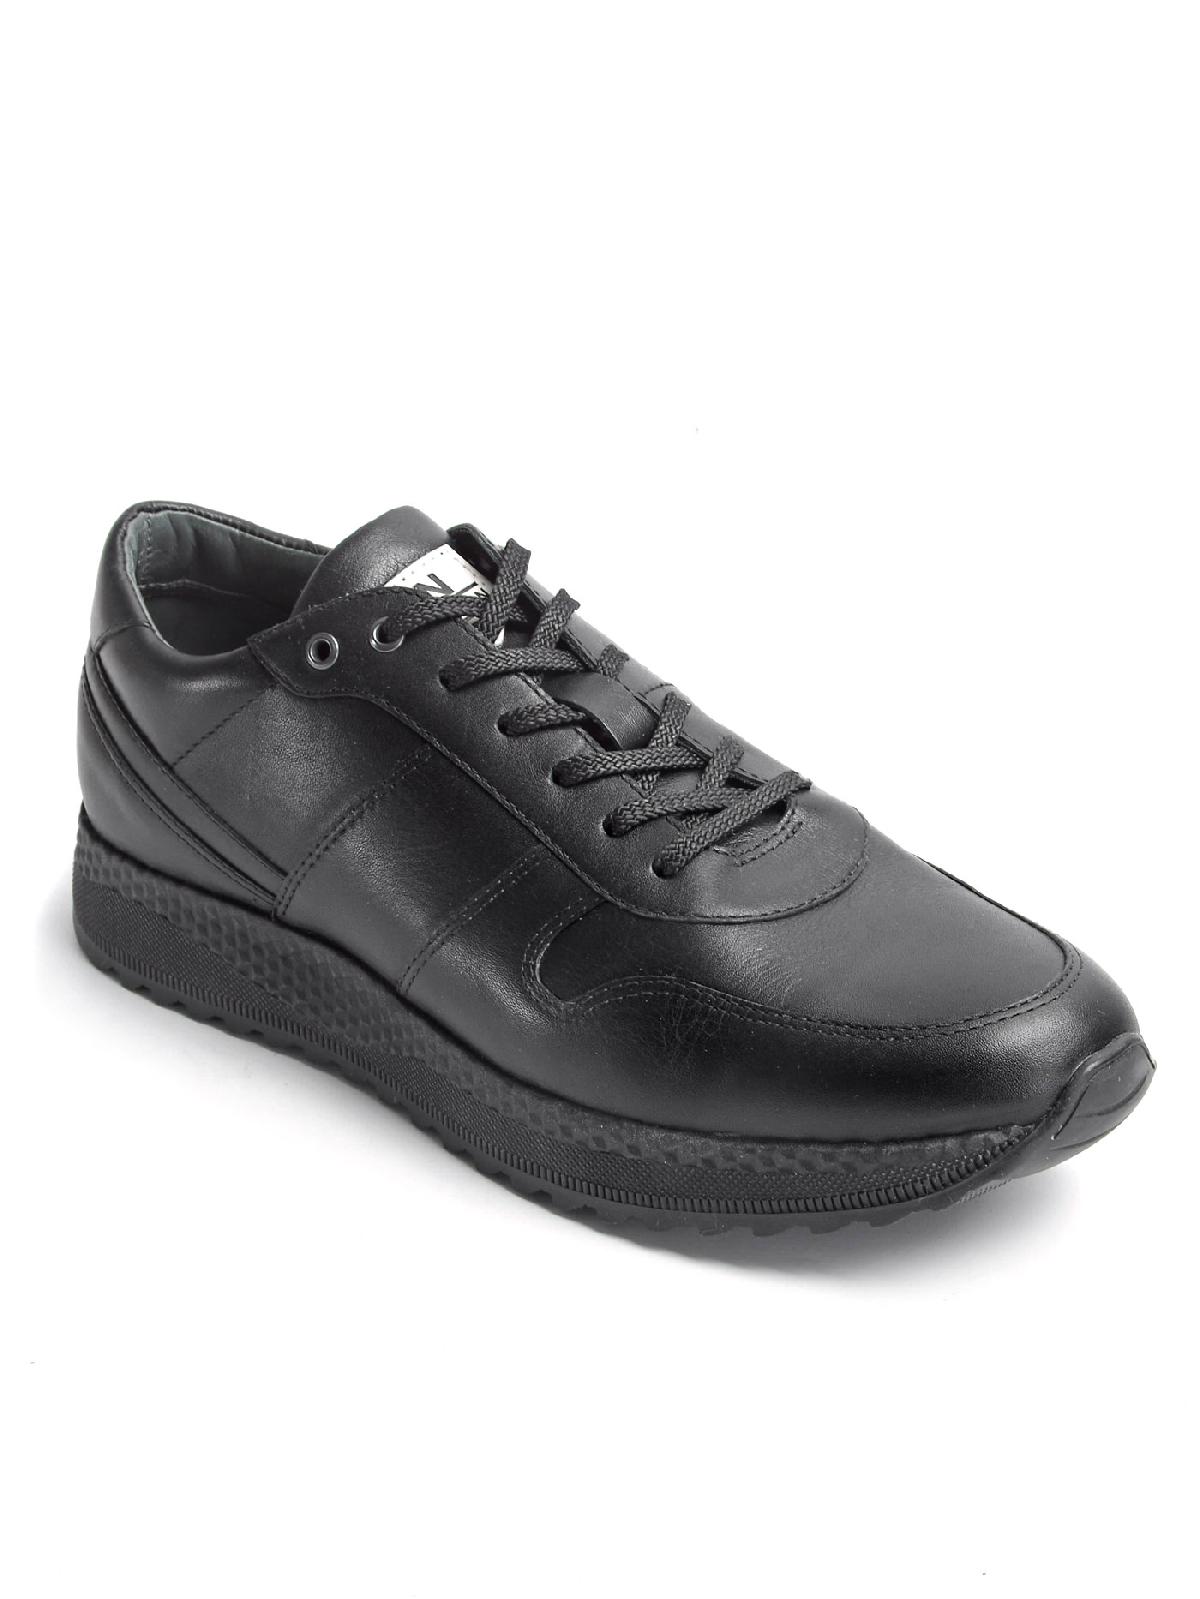 9-3941-011 П/ботинки мужские Енисей обувь